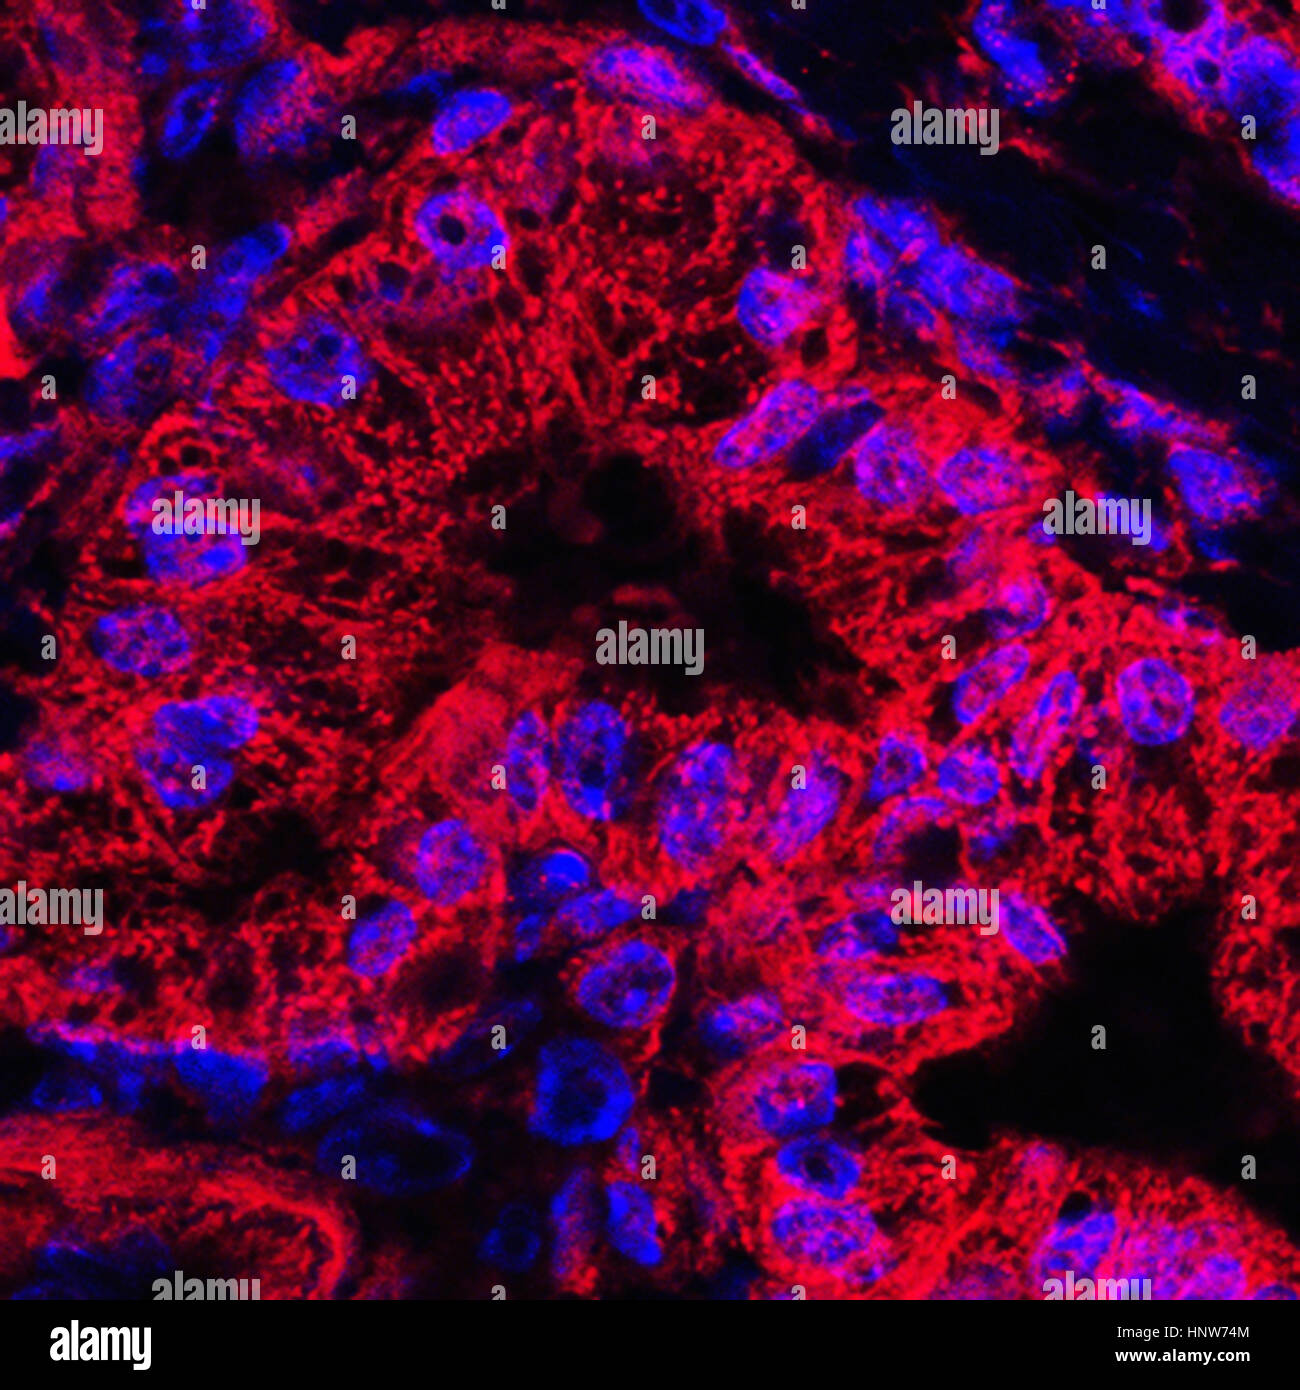 Imagen microscópica de las células del cáncer pancreático manchada mitocondrial Foto de stock